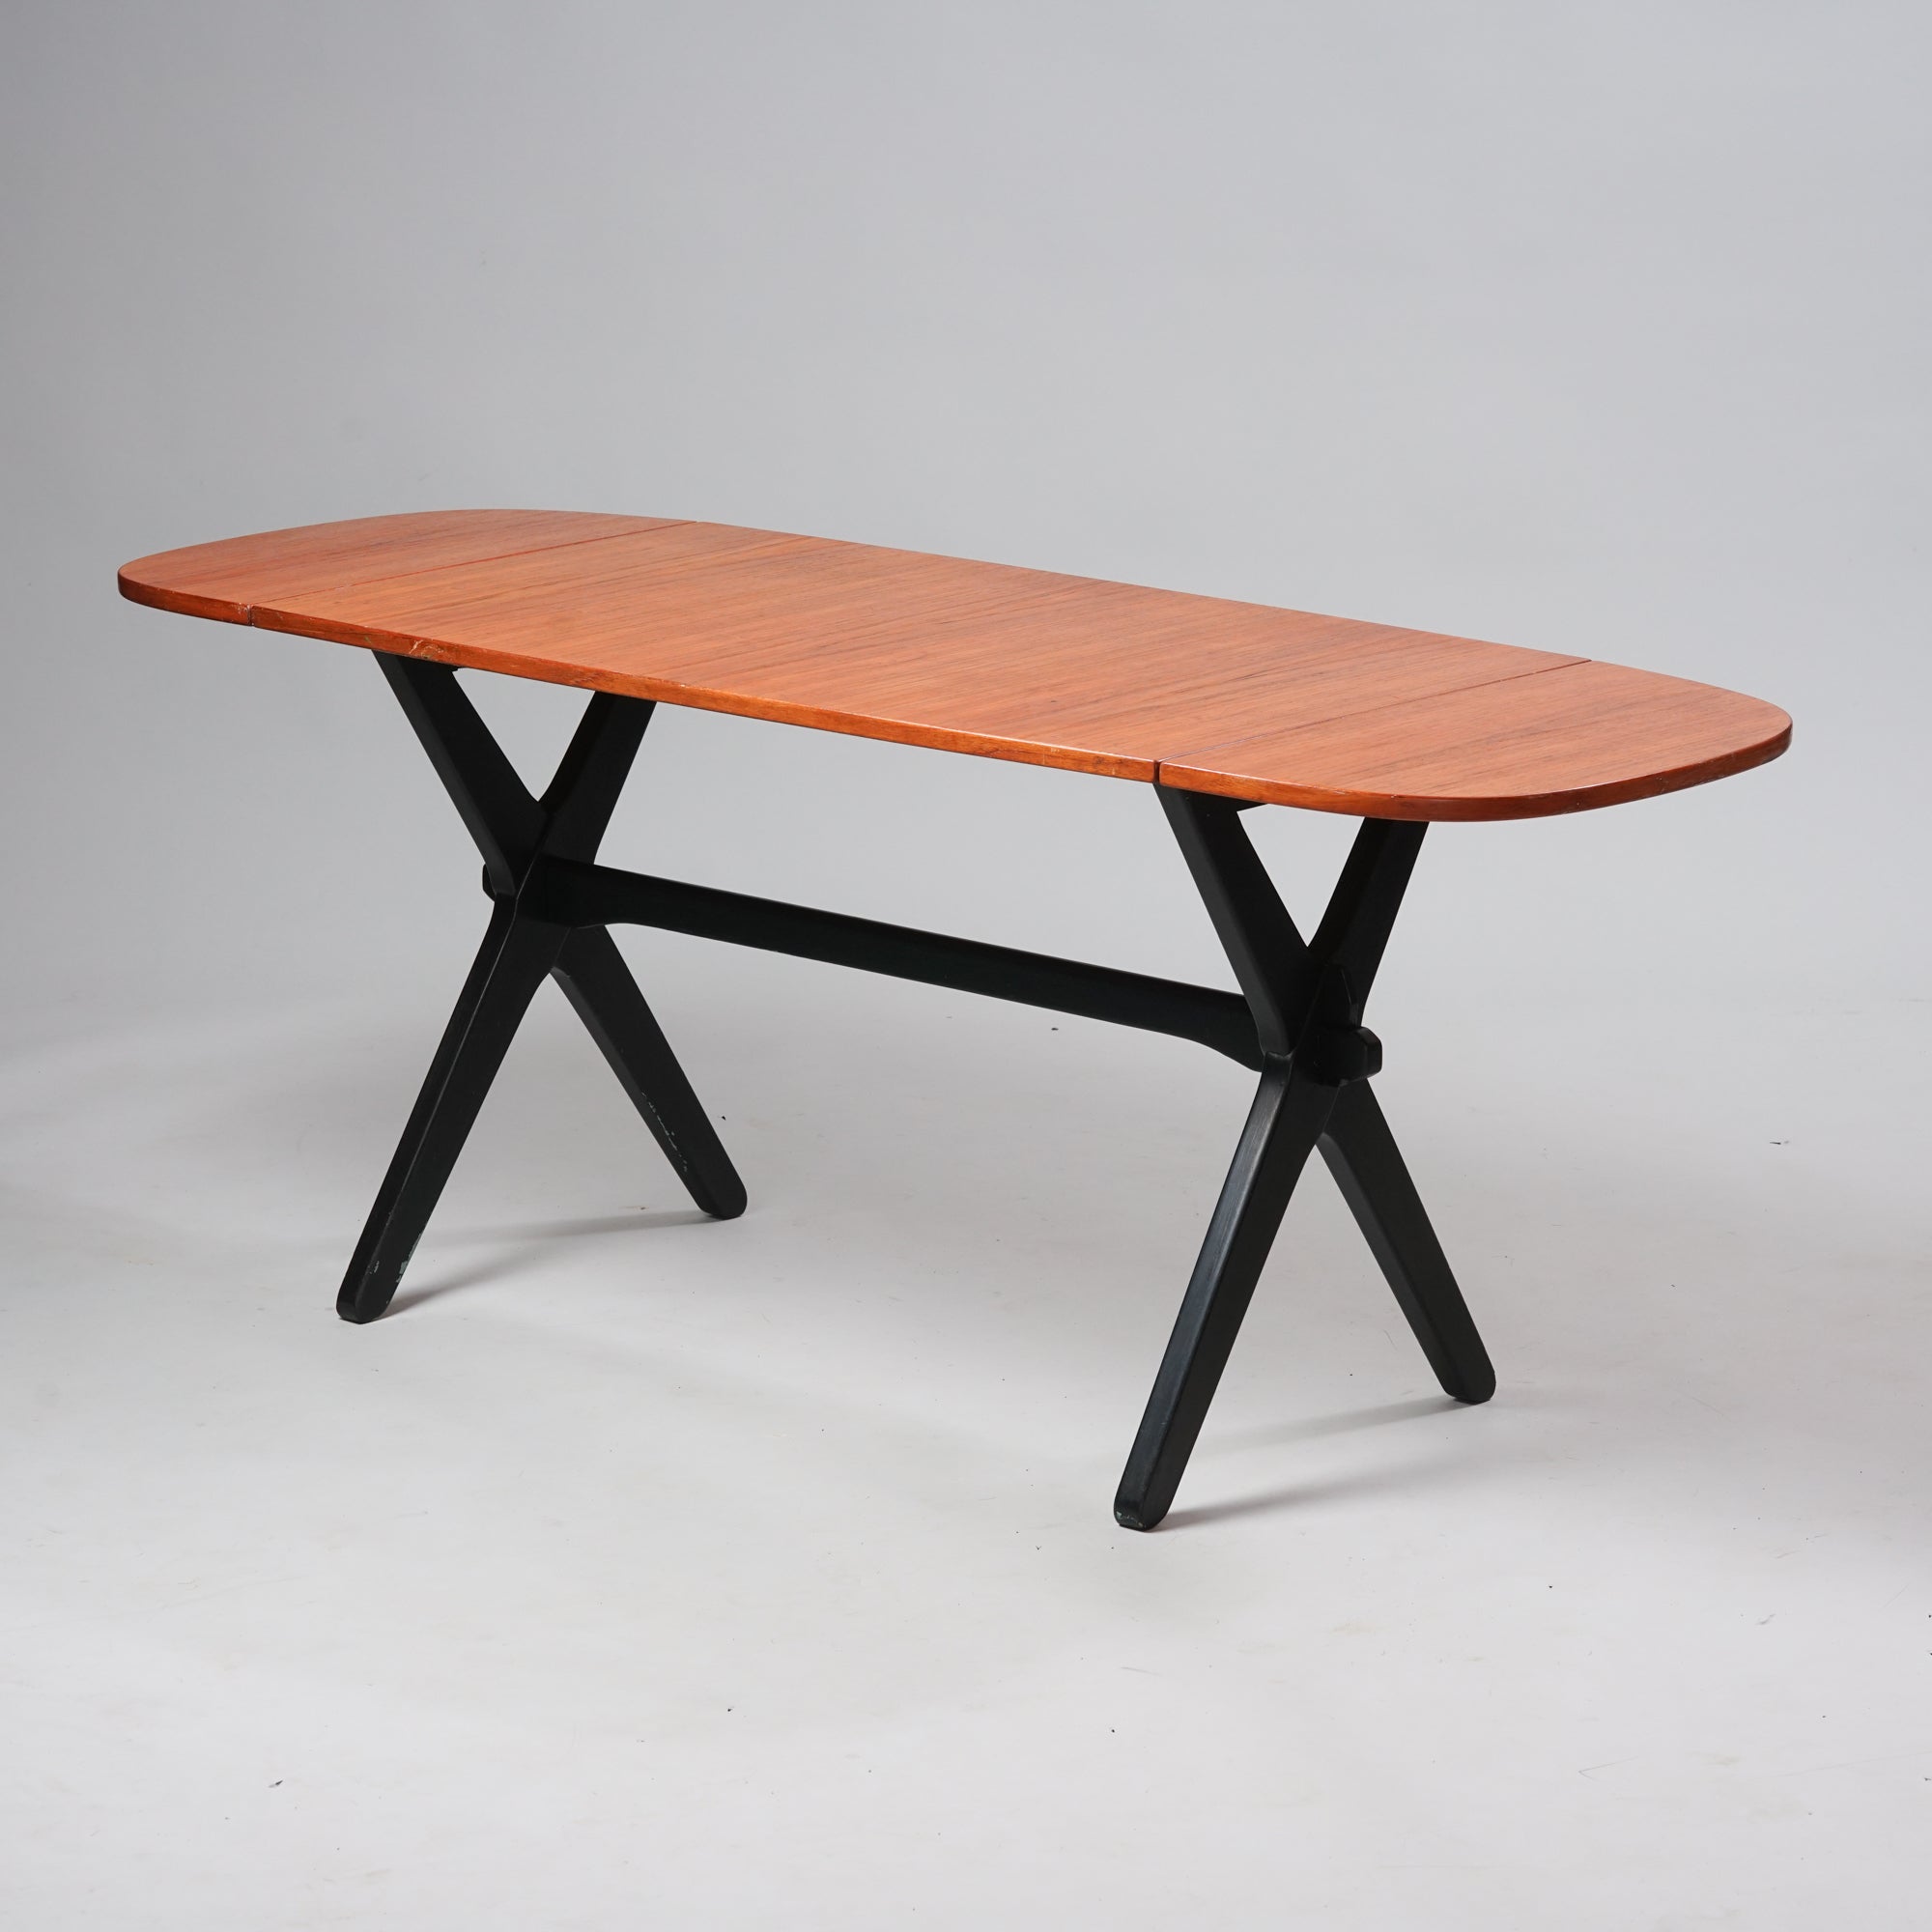 Tiikkitasoinen pöytä, jossa molemmissa päissä on taitettava lisäosa. Pöydän puiset jalat ovat maalattu mustaksi.